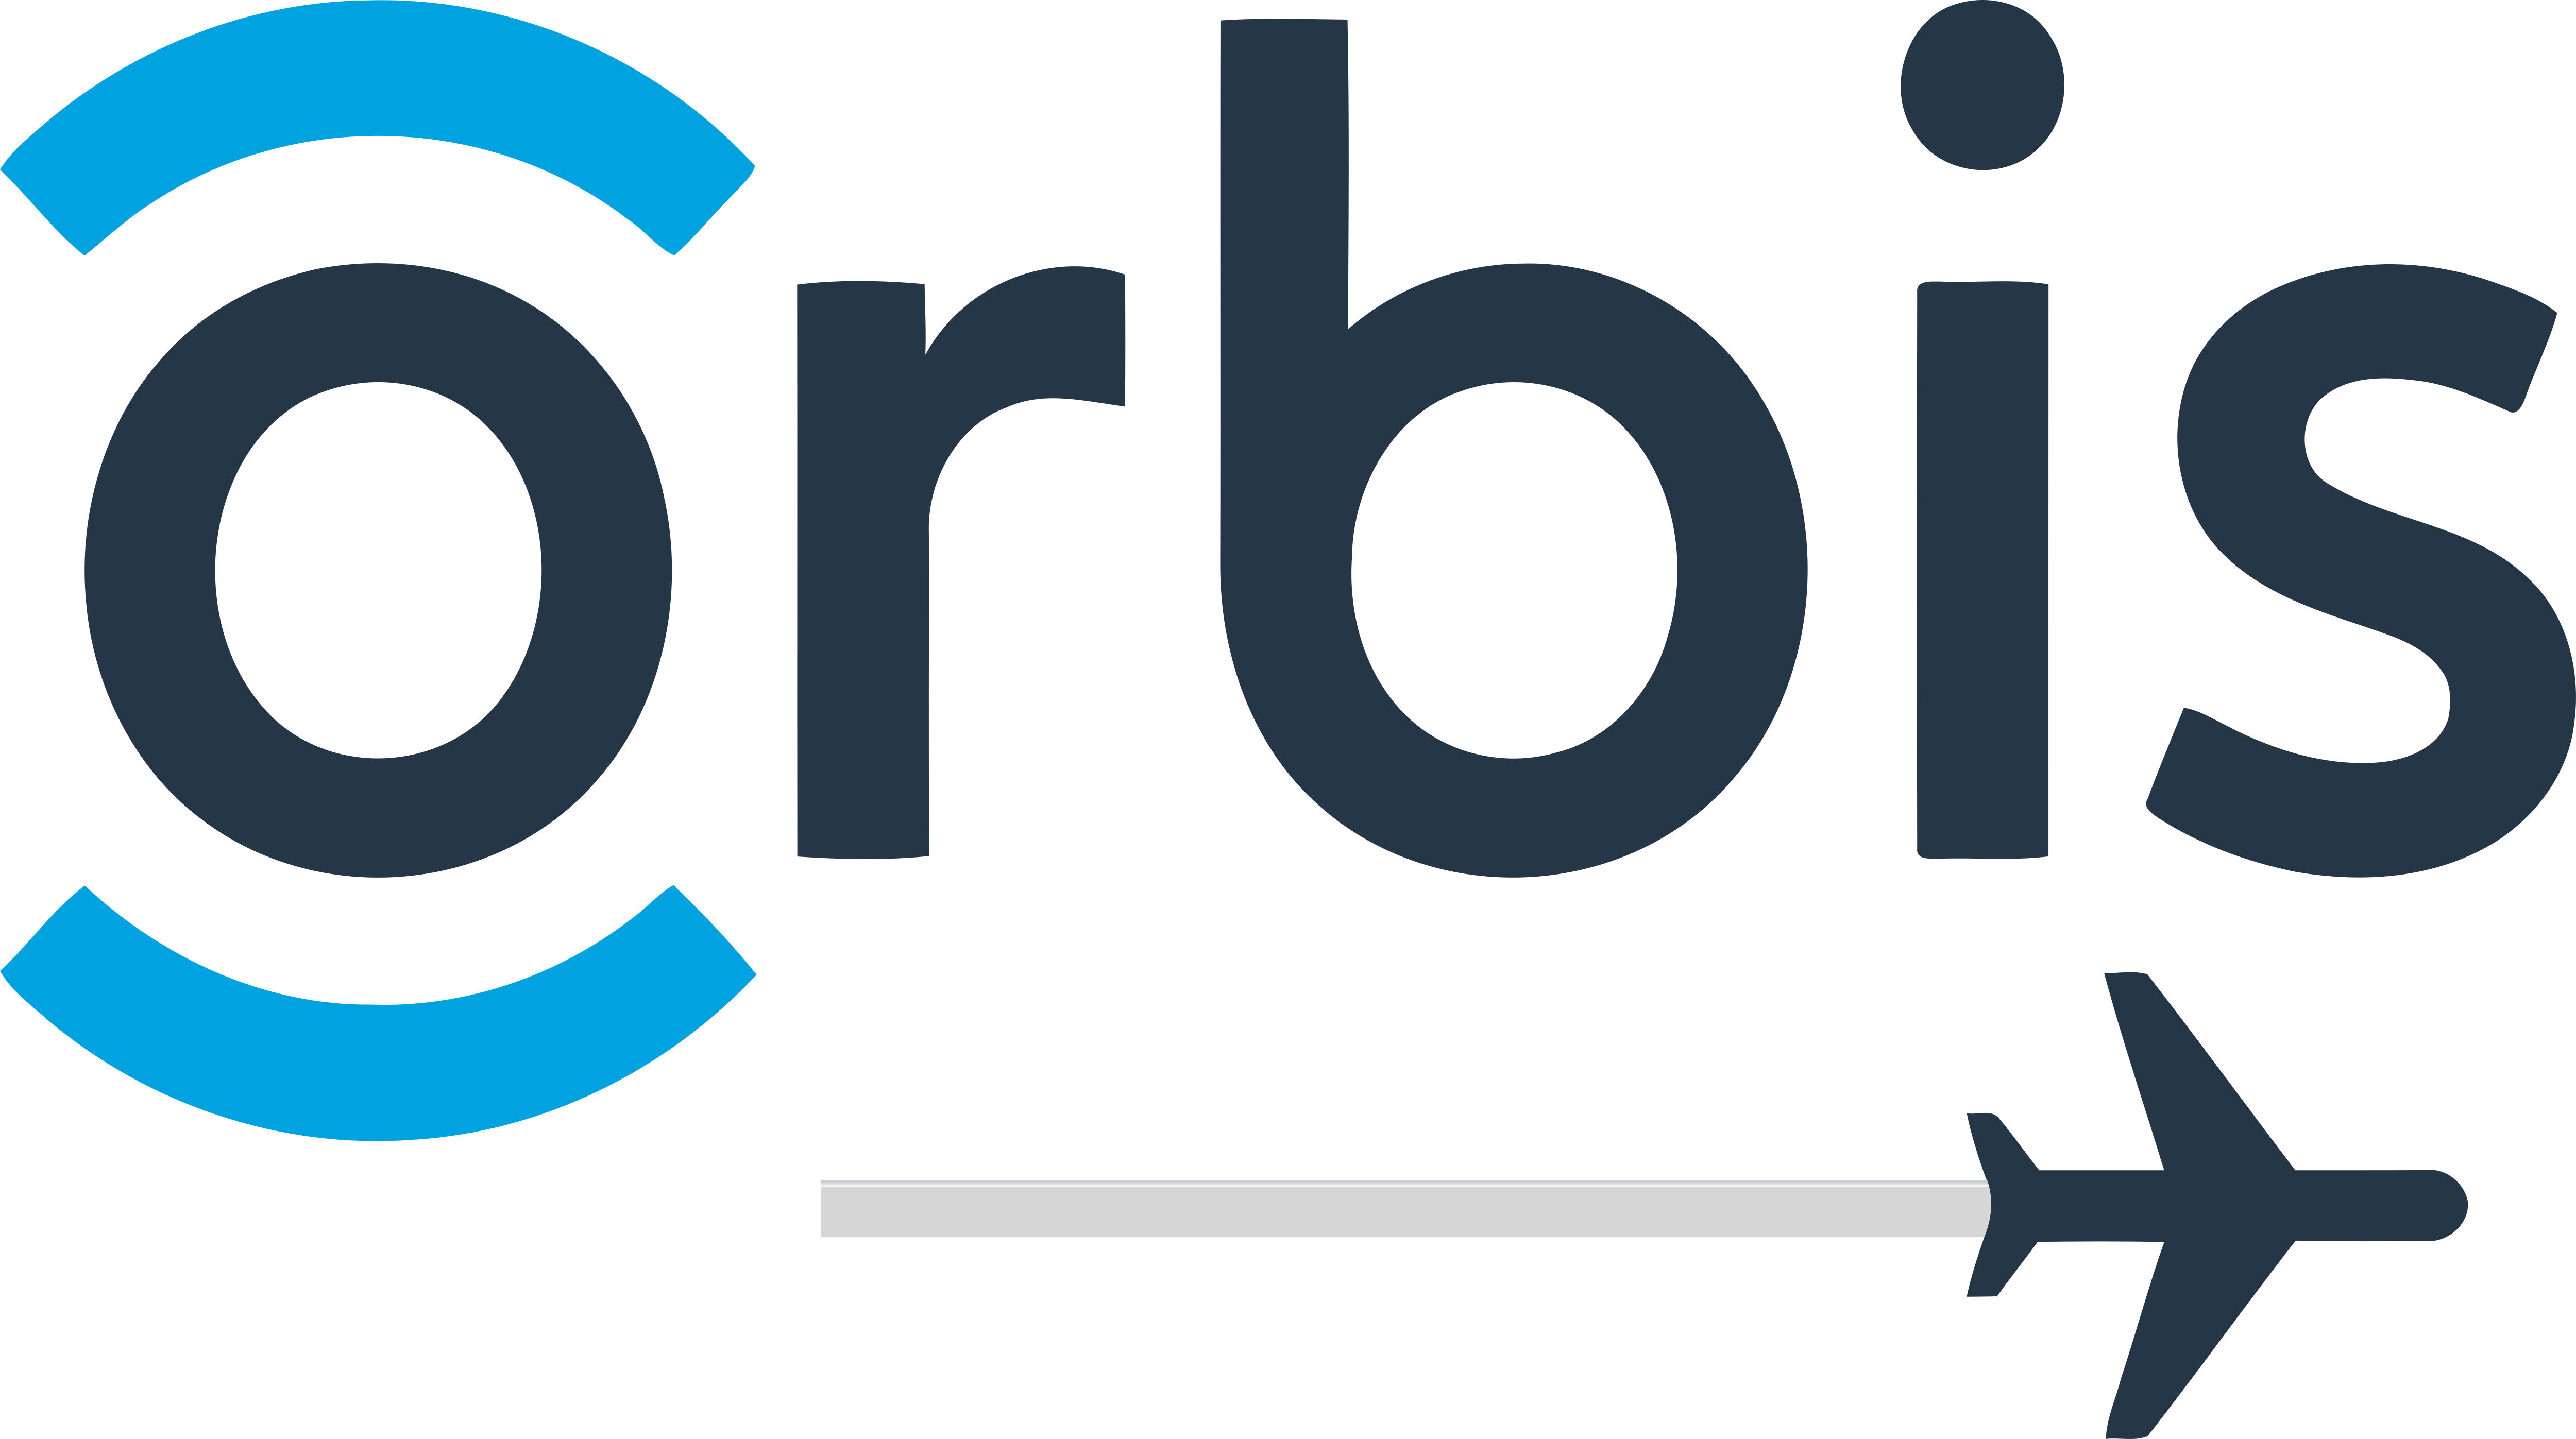  Orbis International Logos Download